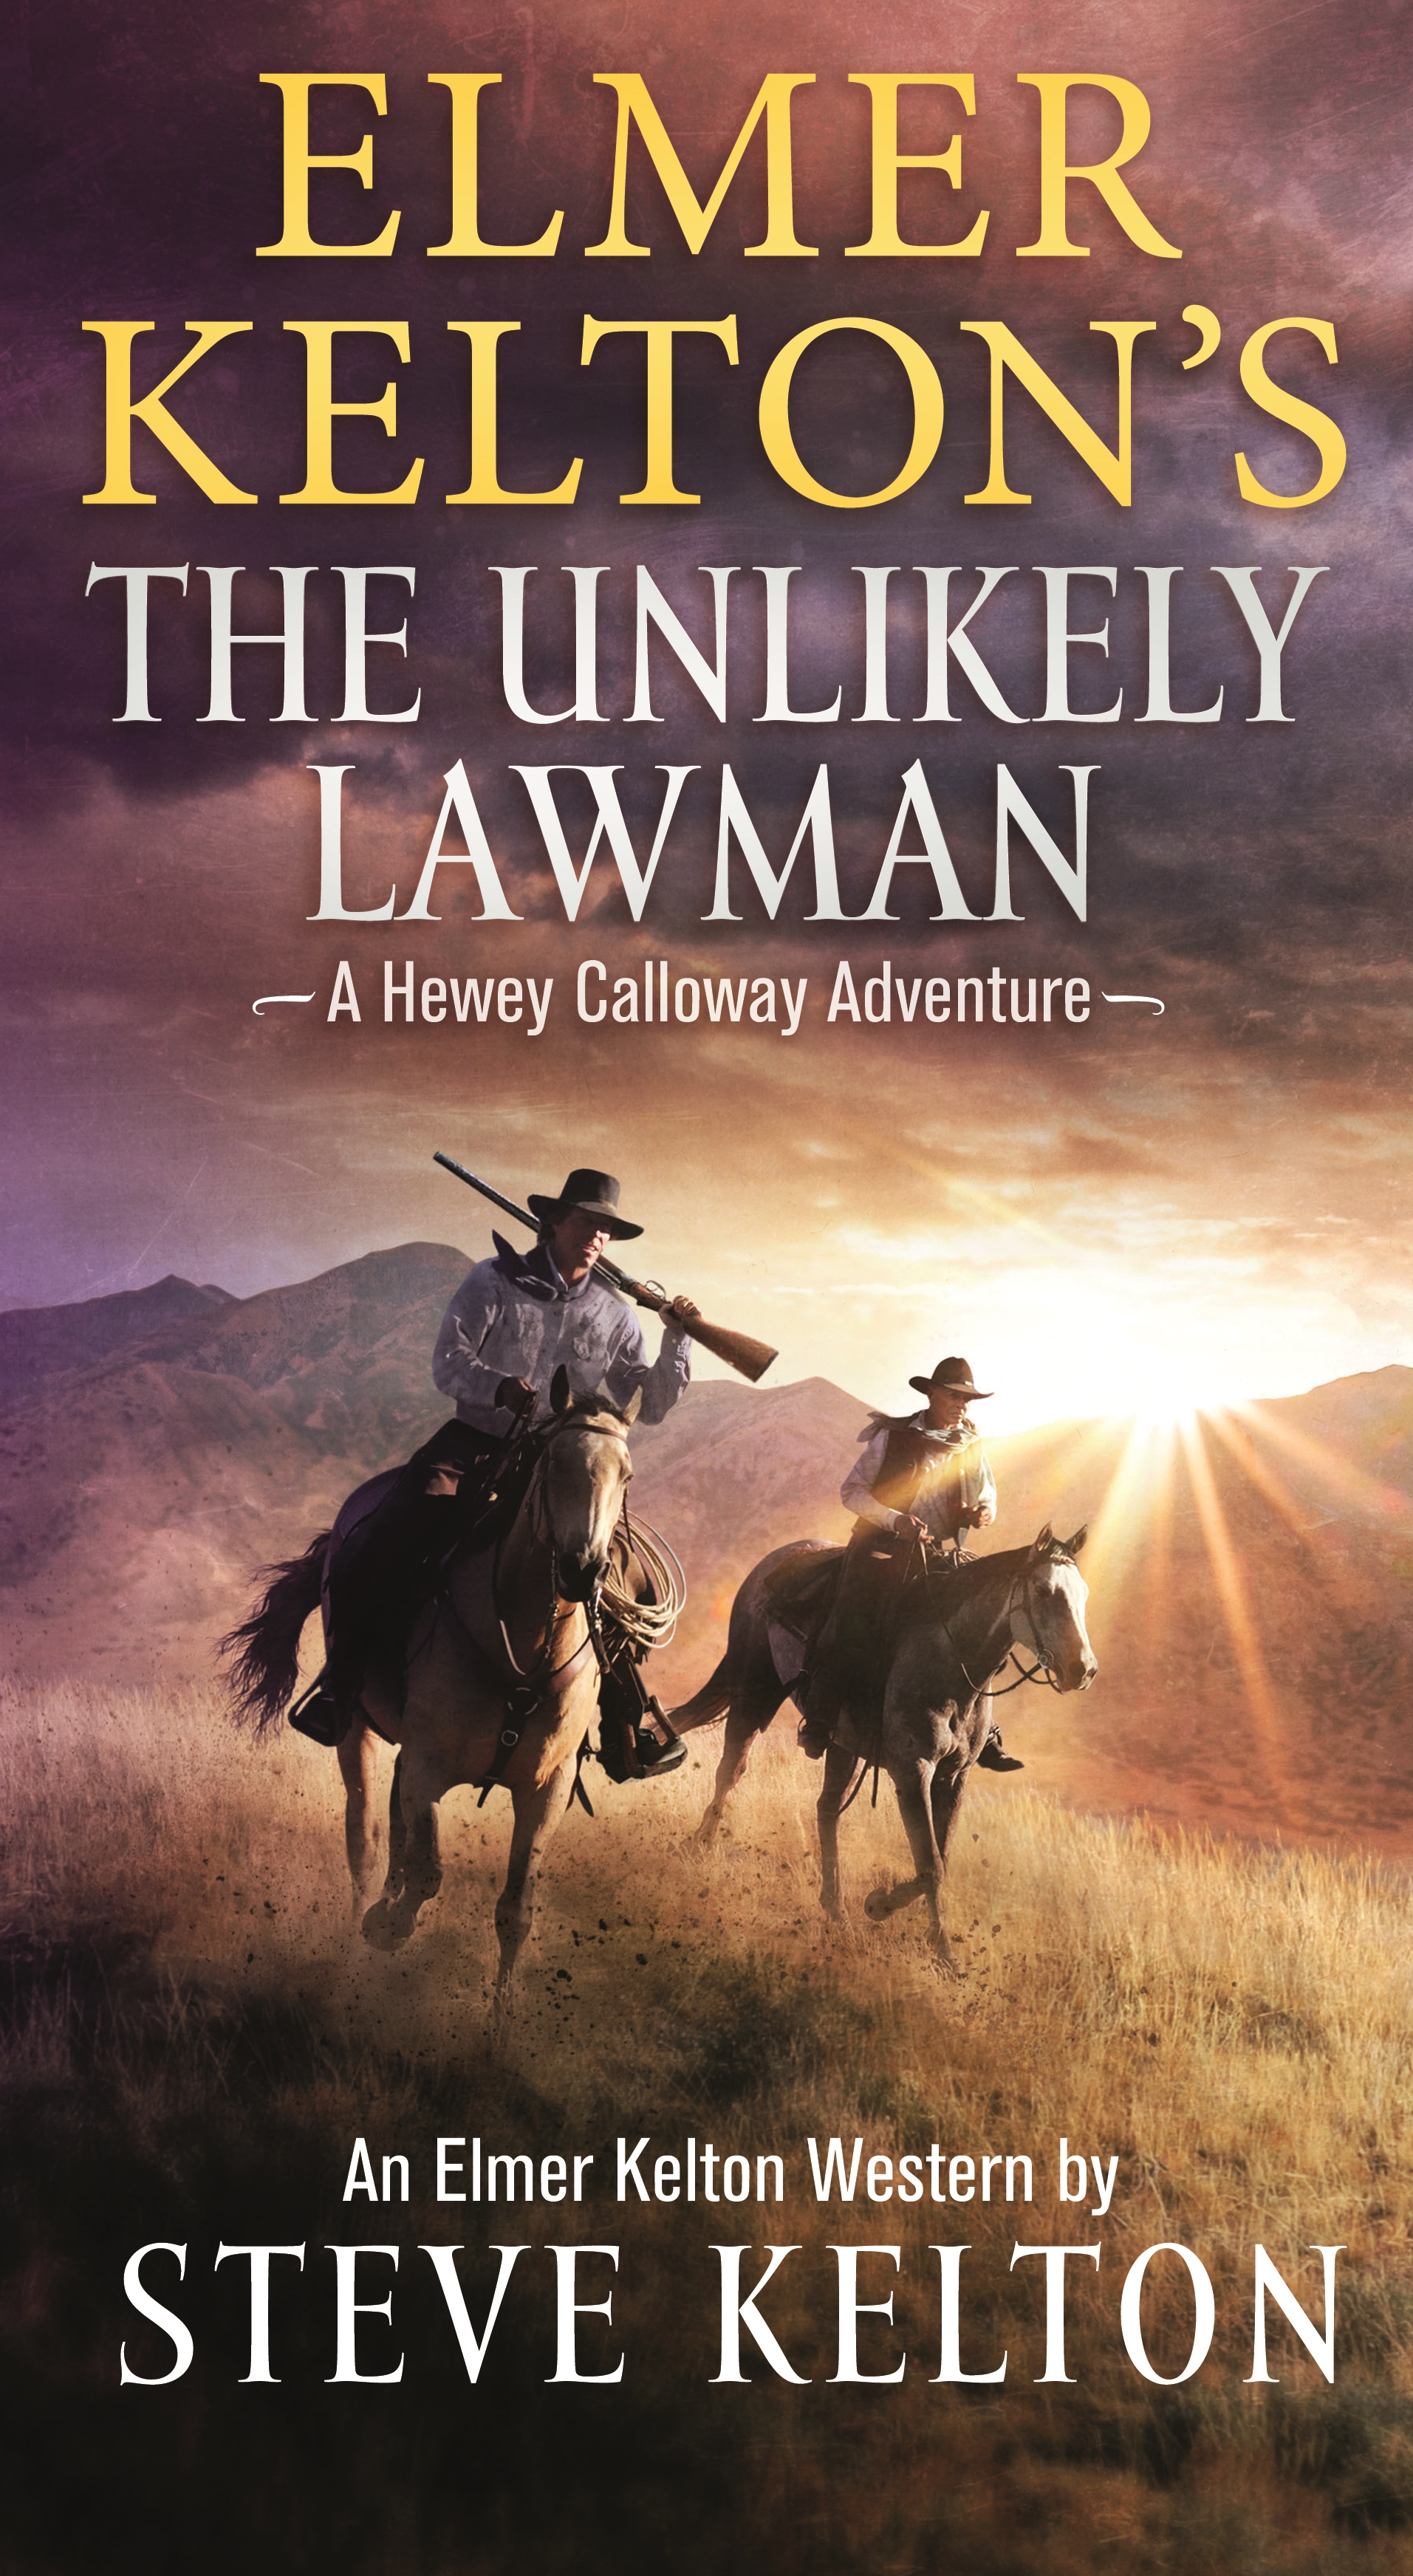 Elmer Kelton's The Unlikely Lawman : A Hewey Calloway Adventure by Steve Kelton, Elmer Kelton